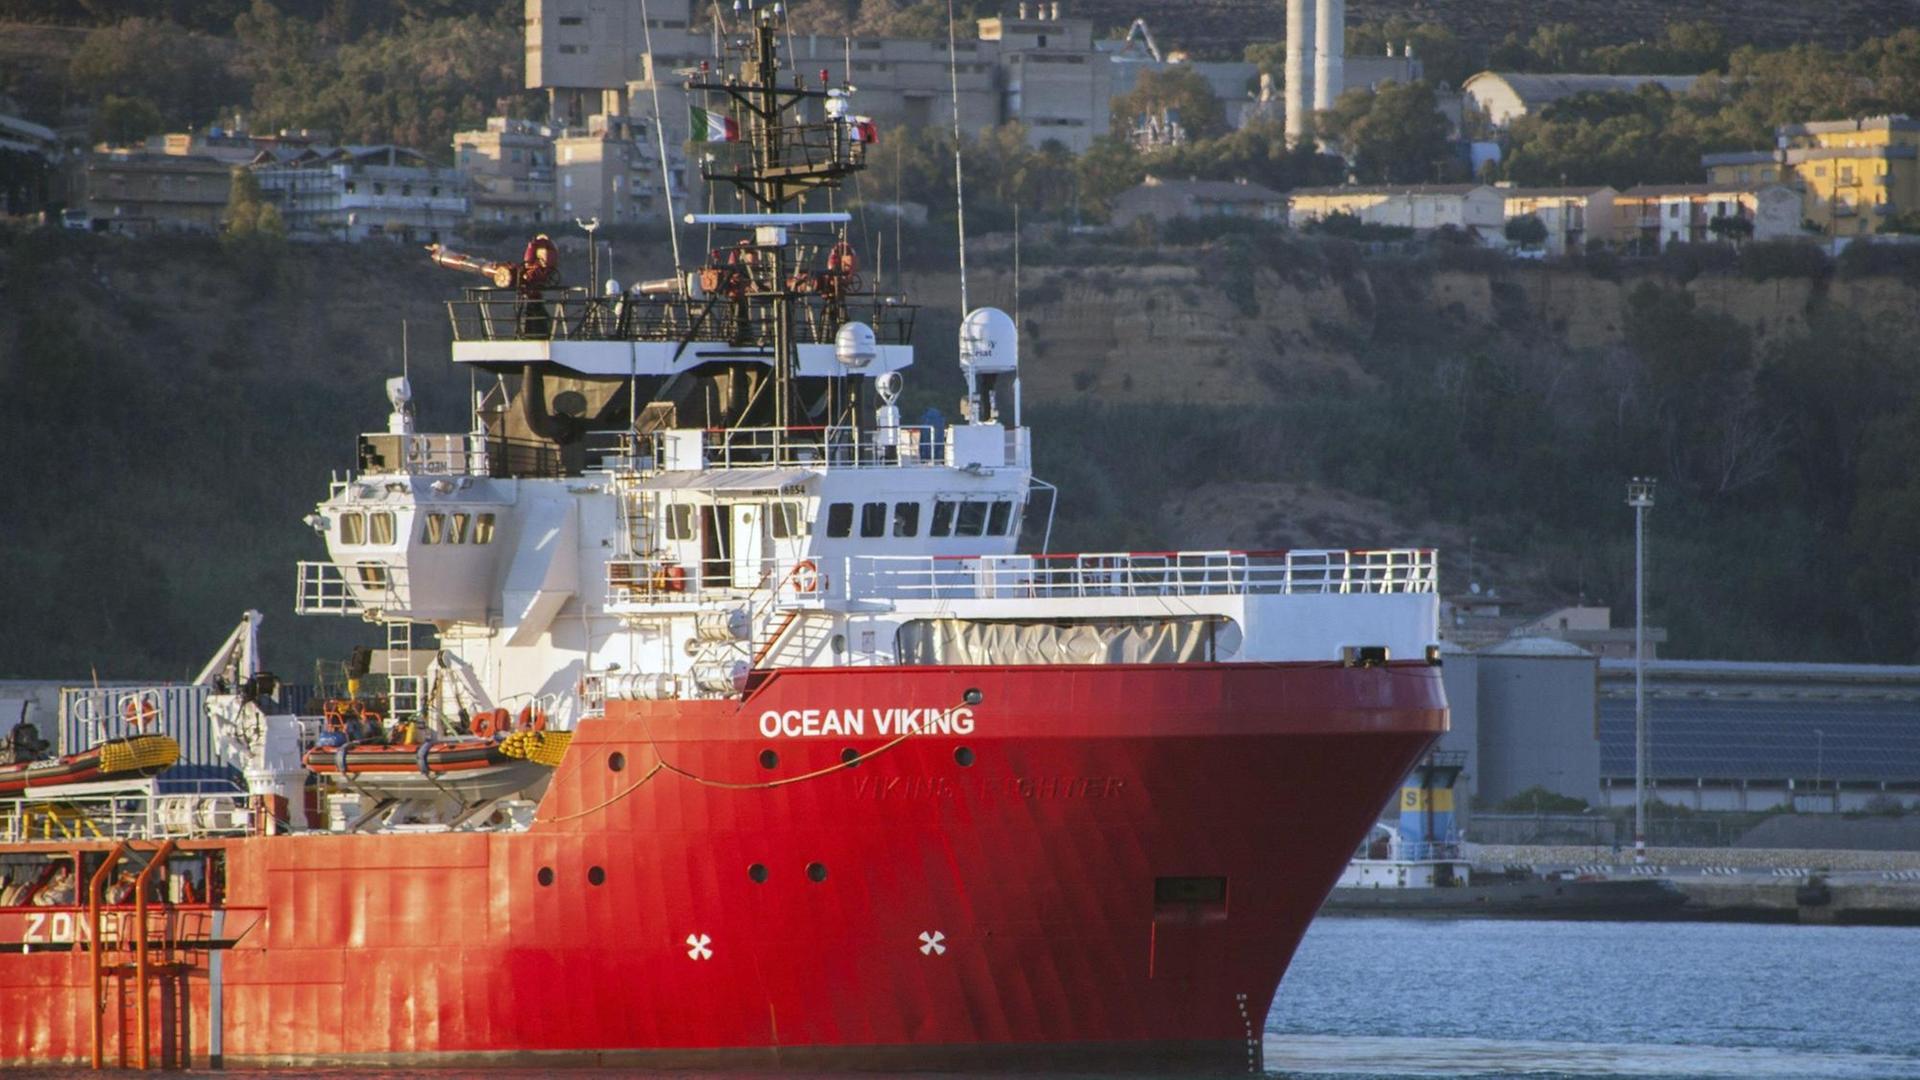 Ein großes rotes Schiff mit der Aufschrift "Ocean Viking"